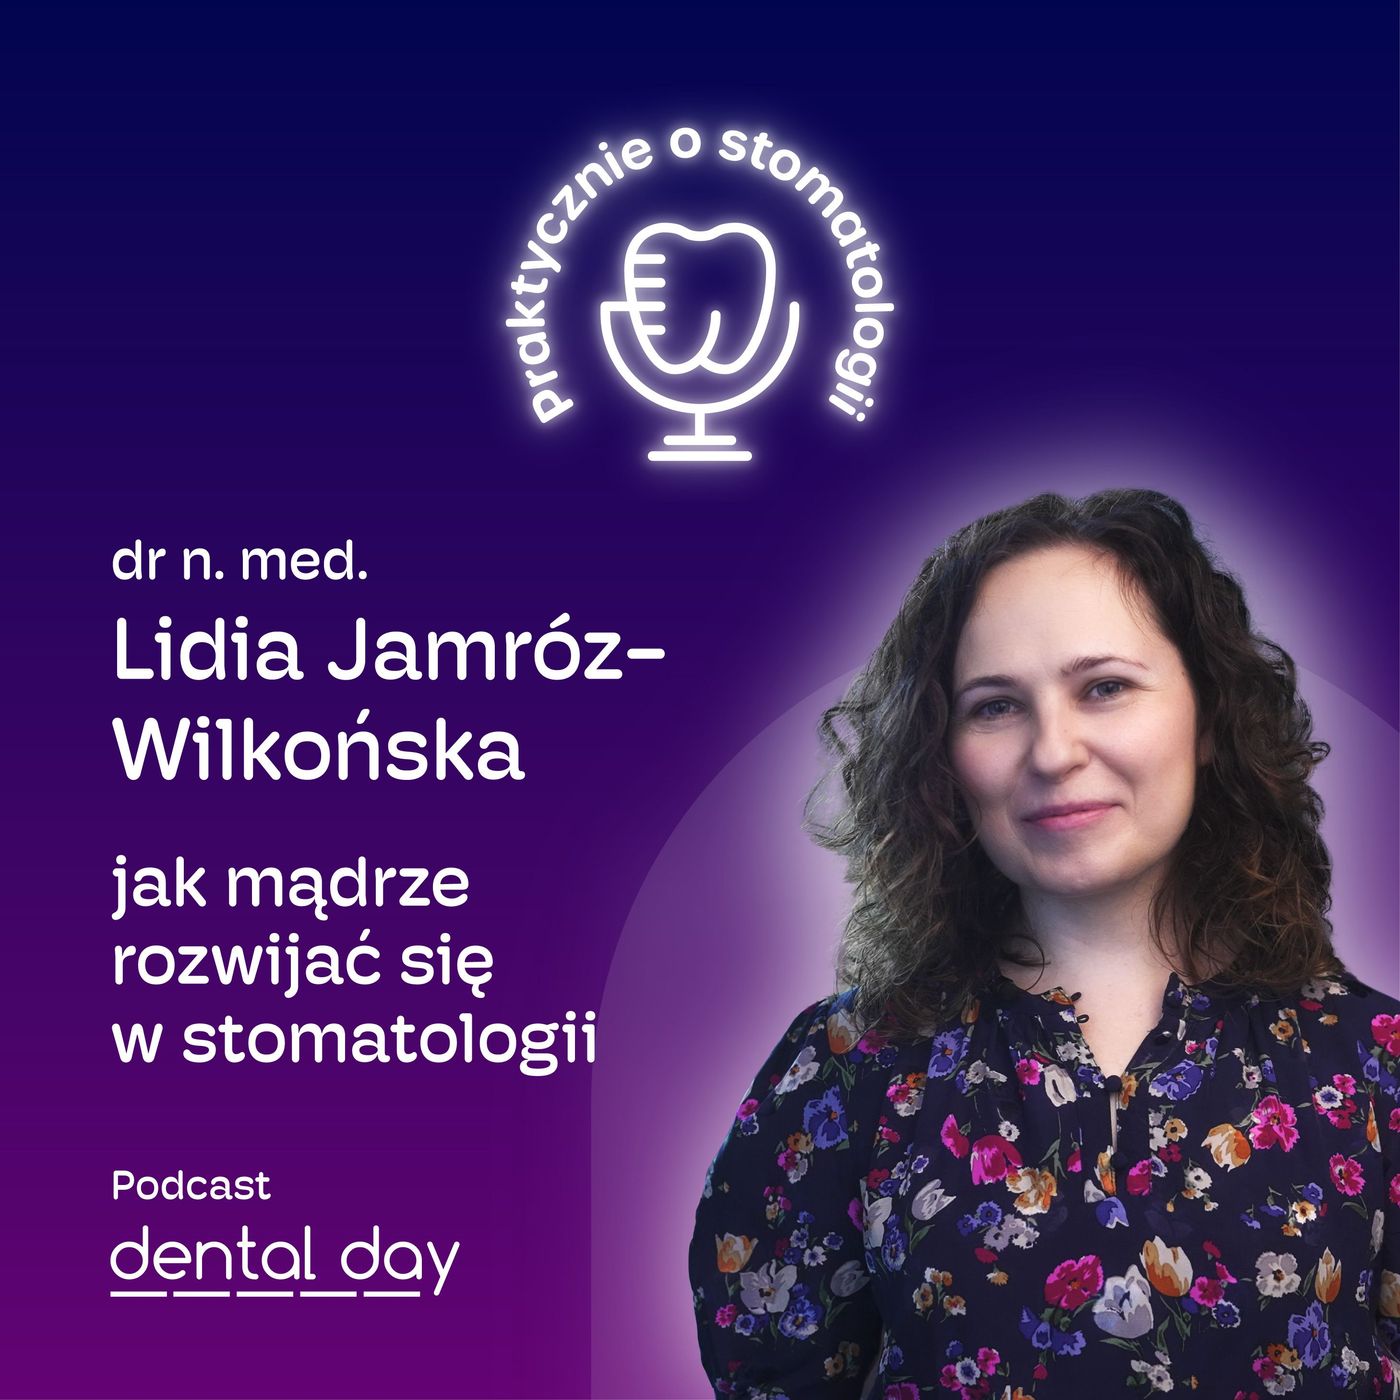 dr n. med. Lidia Jamróz-Wilkońska: Jak mądrze rozwijać się w stomatologii